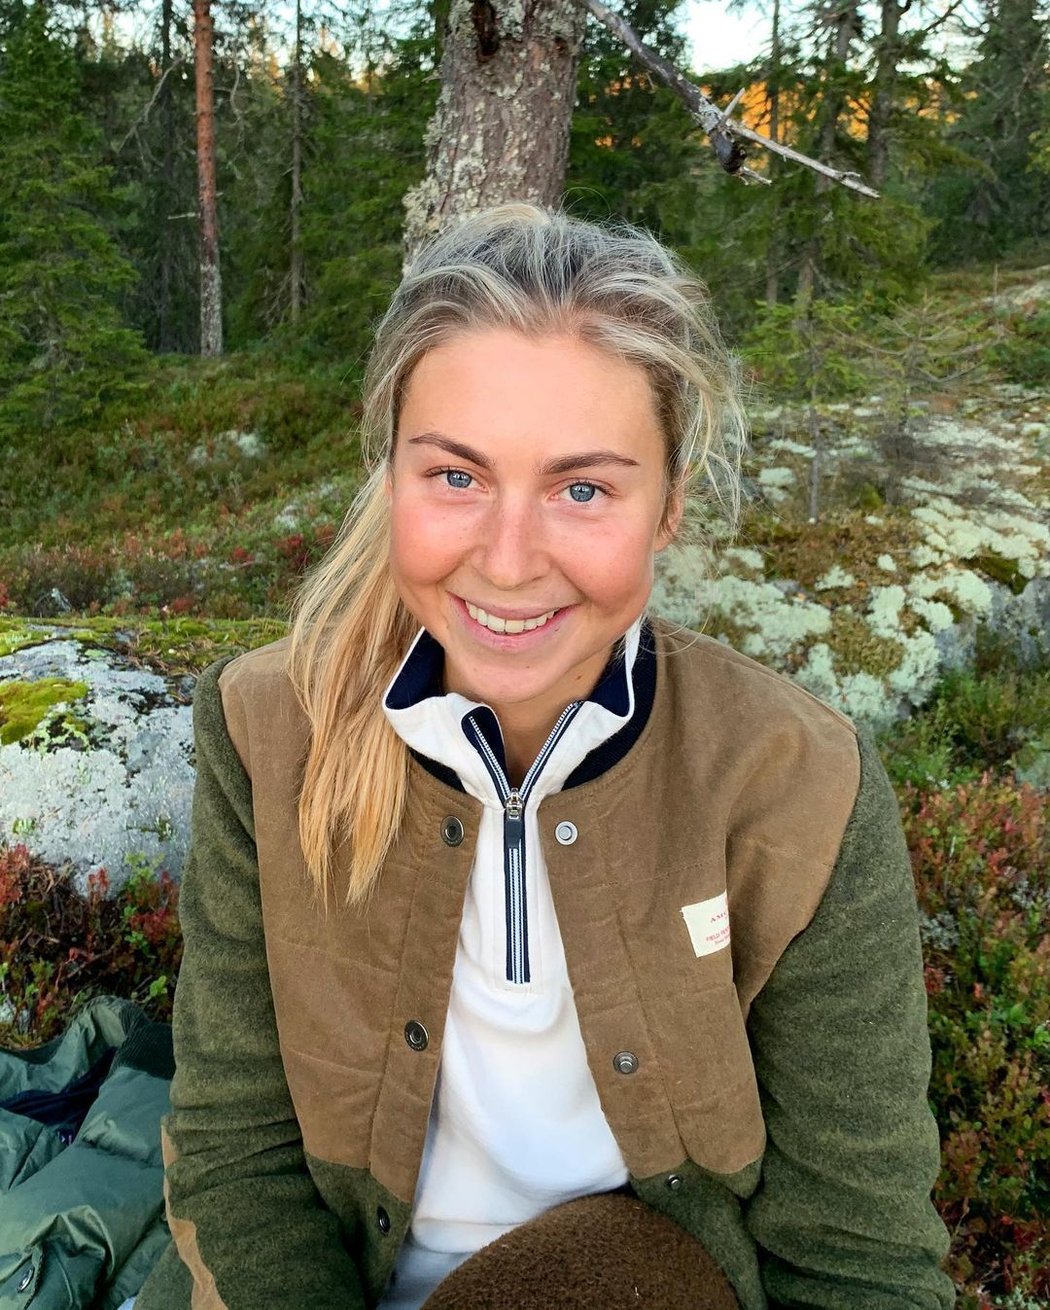 Jedna z nejkrásnějších biatlonistek - Ingrid Landmark Tandrevoldová